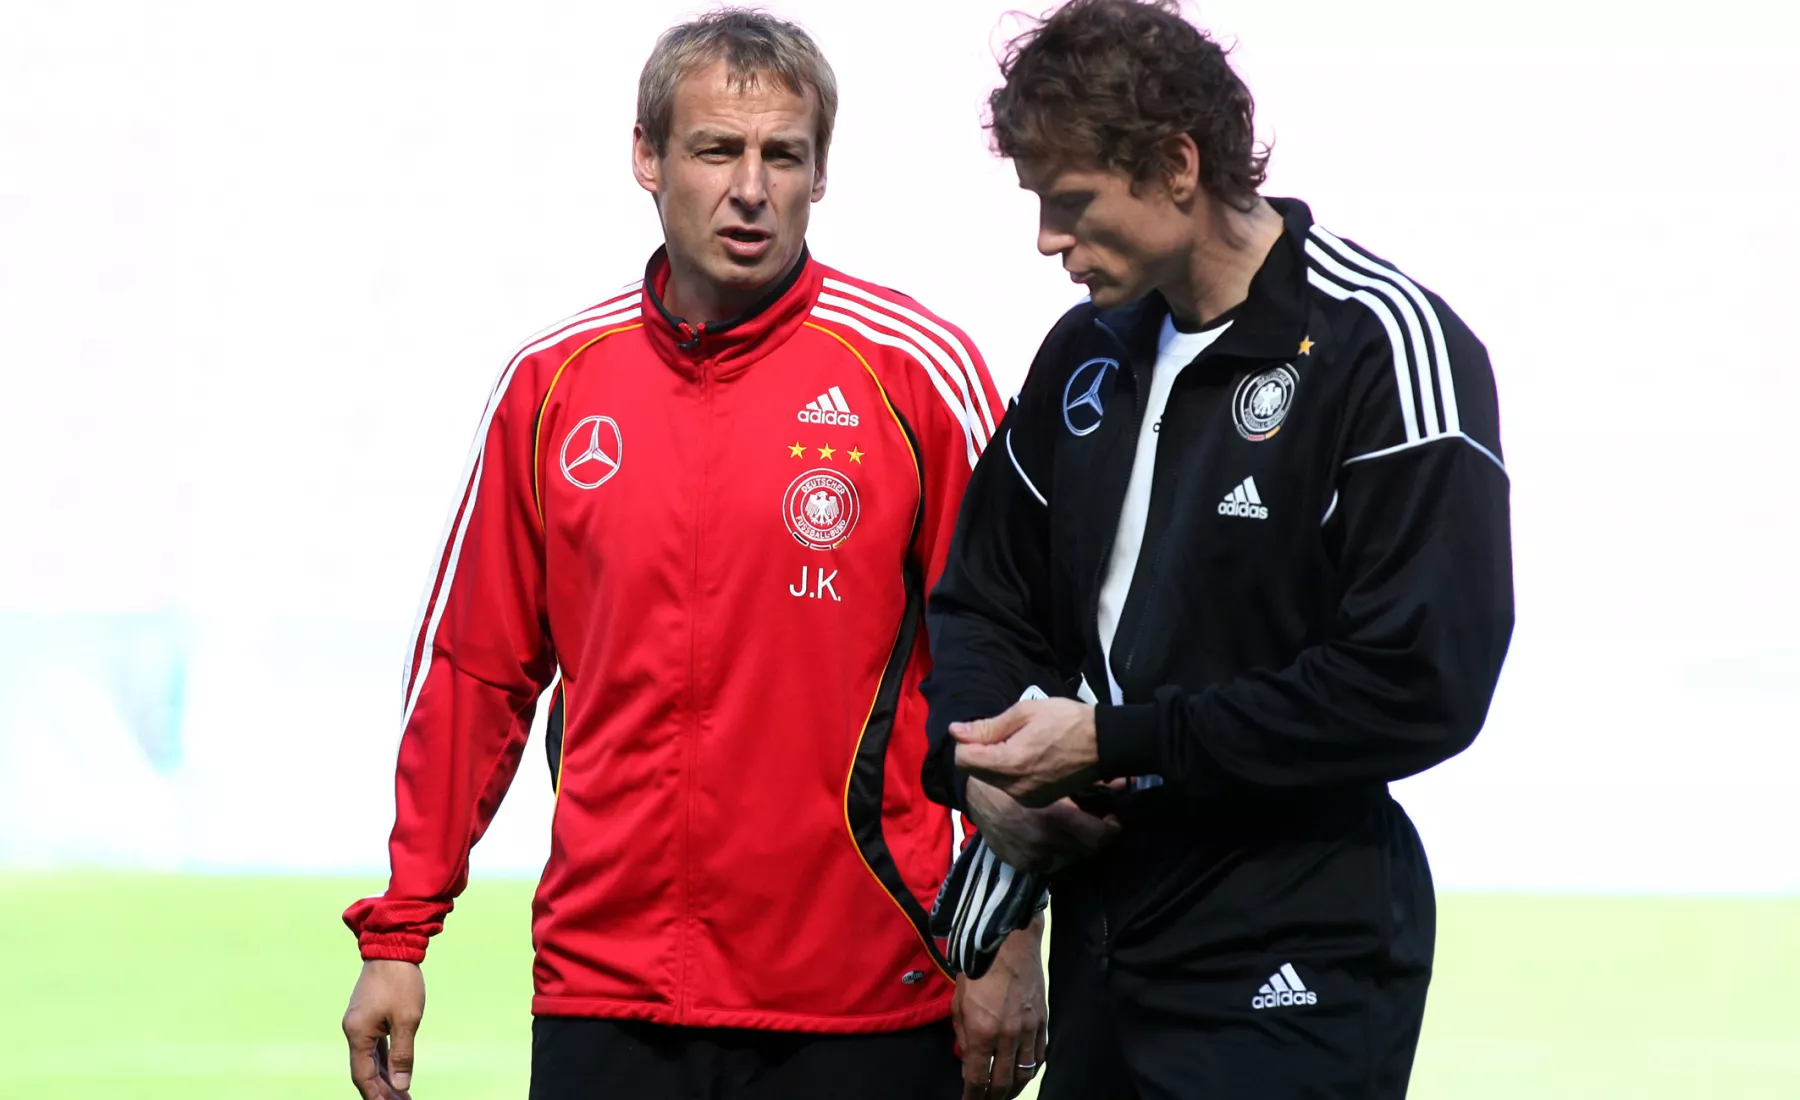 Damaliger Torwart Jens Lehmann zusammen mit dem damaligen Bundestrainer Jürgen Klinsmann